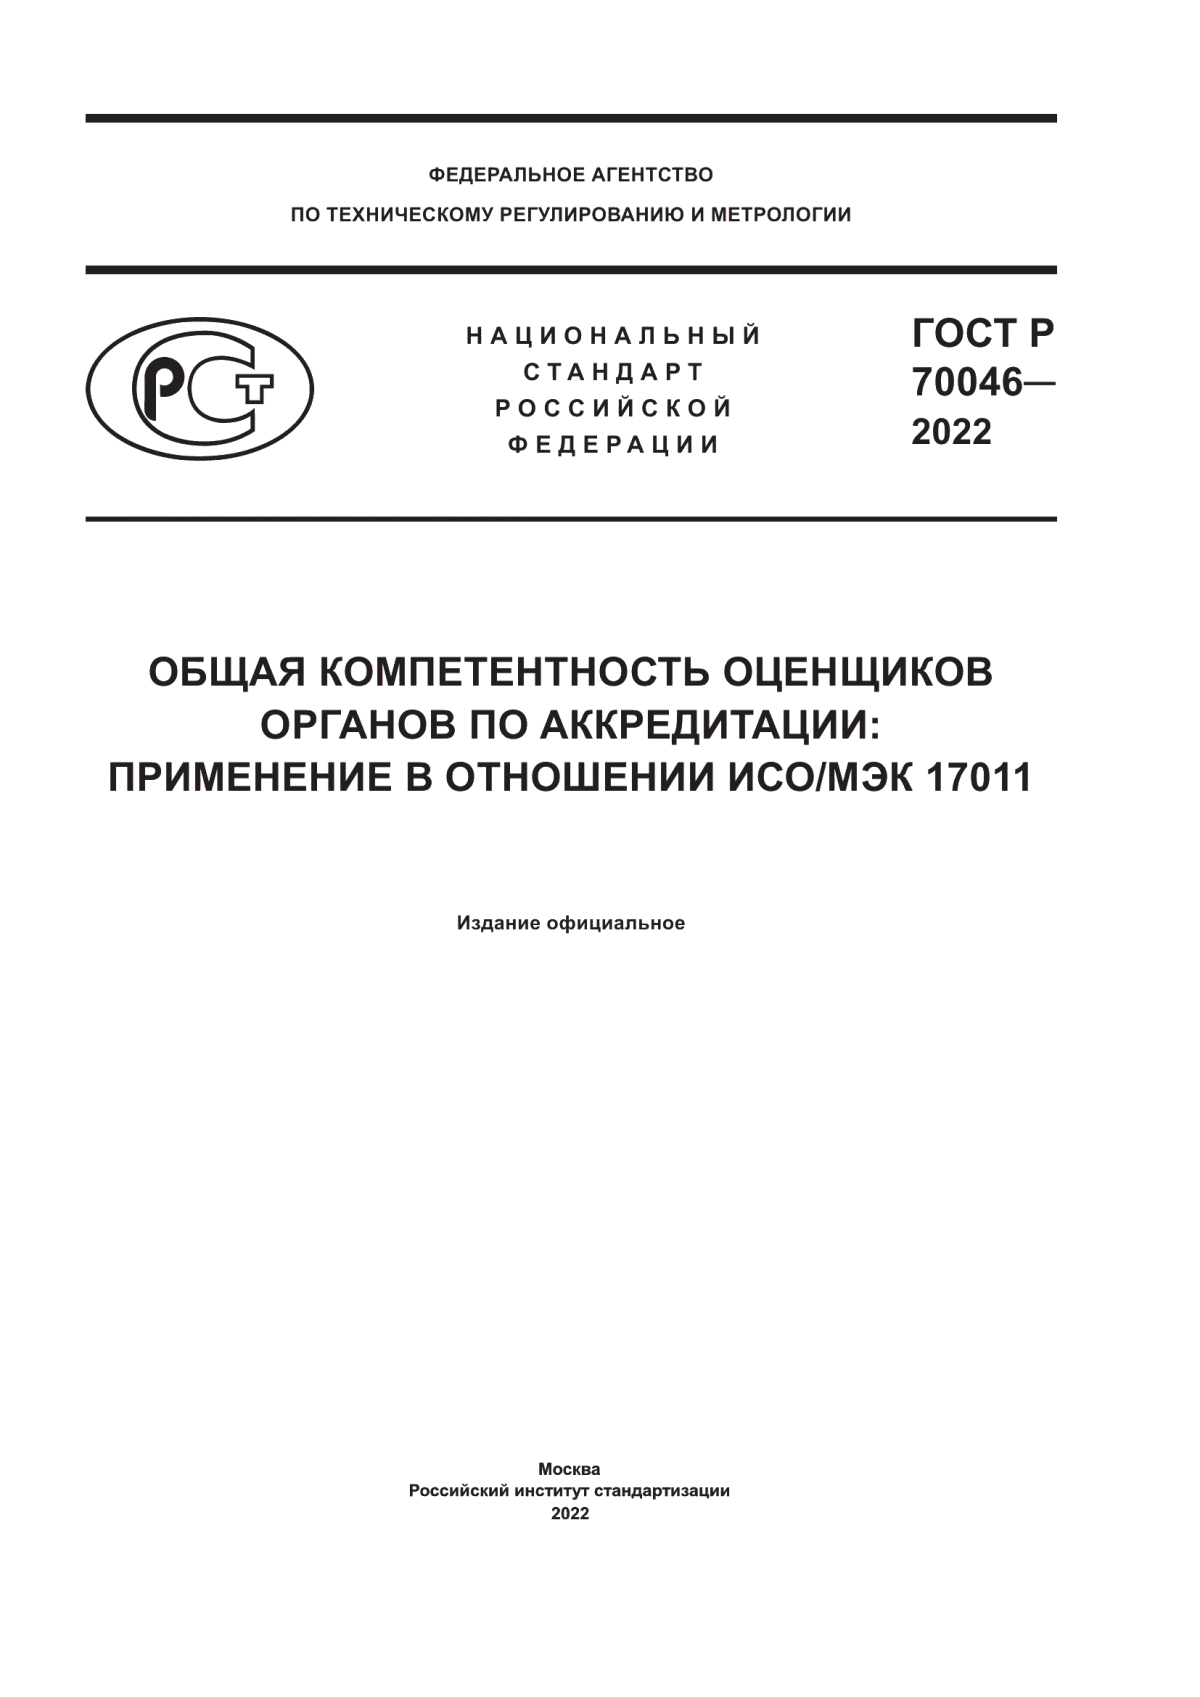 ГОСТ Р 70046-2022 Общая компетентность оценщиков органов по аккредитации: применение в отношении ИСО/МЭК 17011